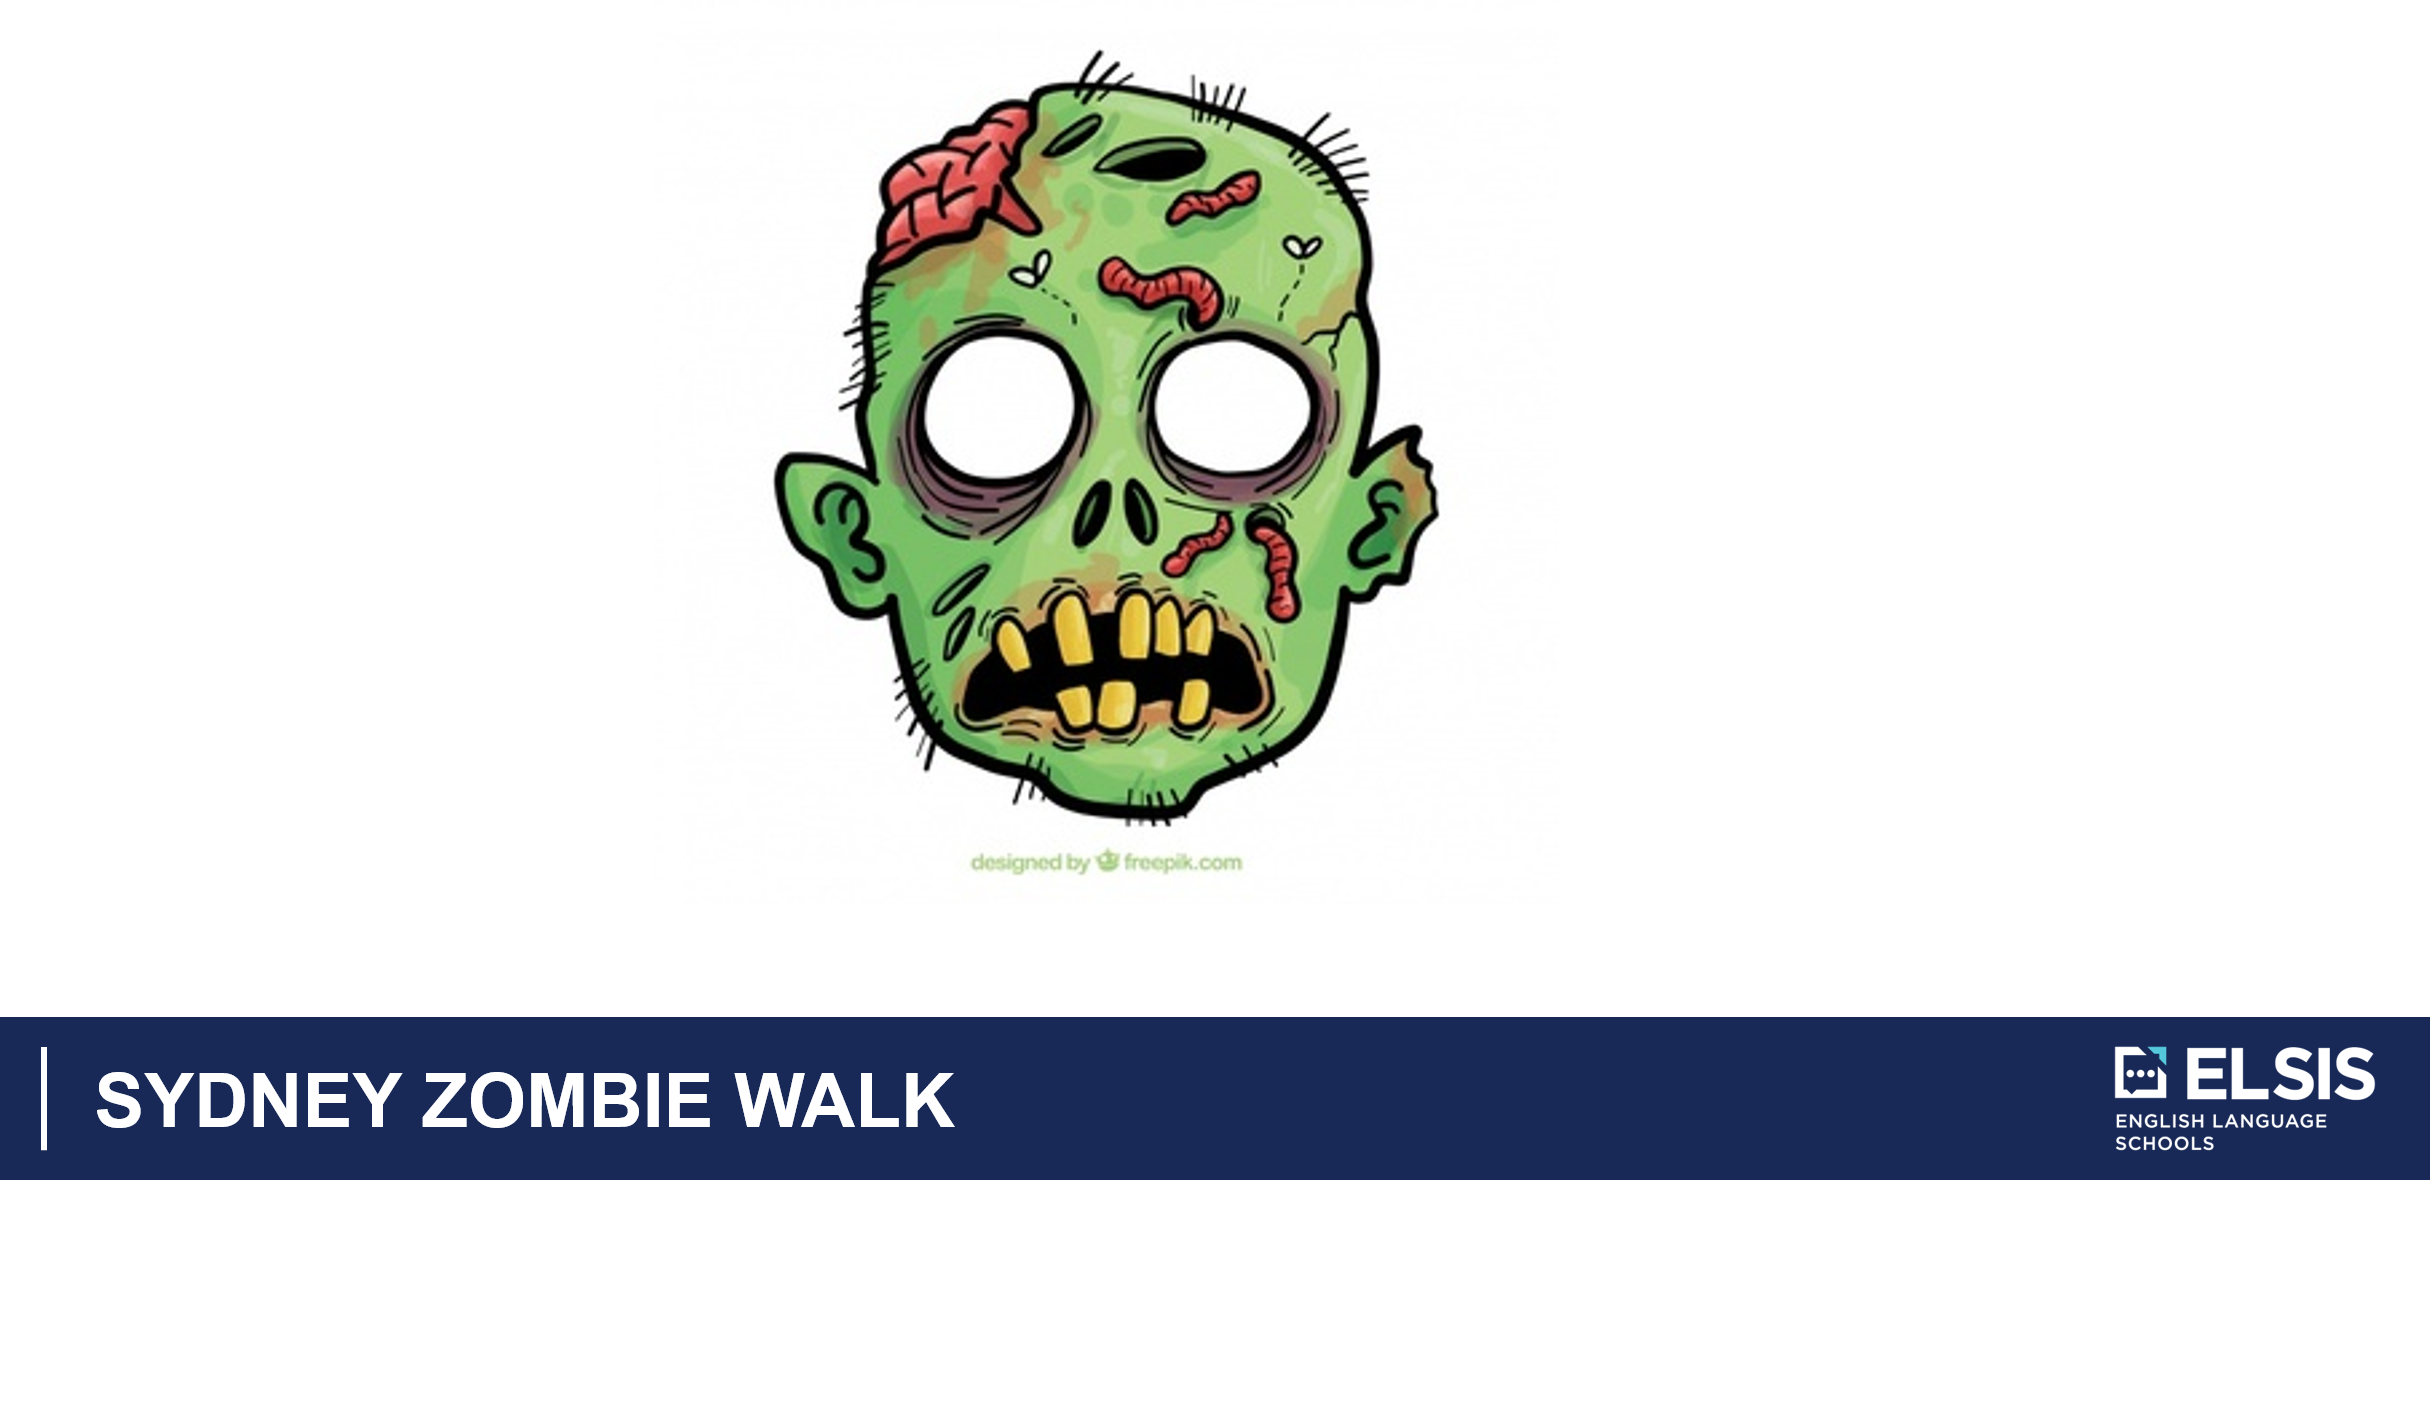 Sydney Zombie Walk